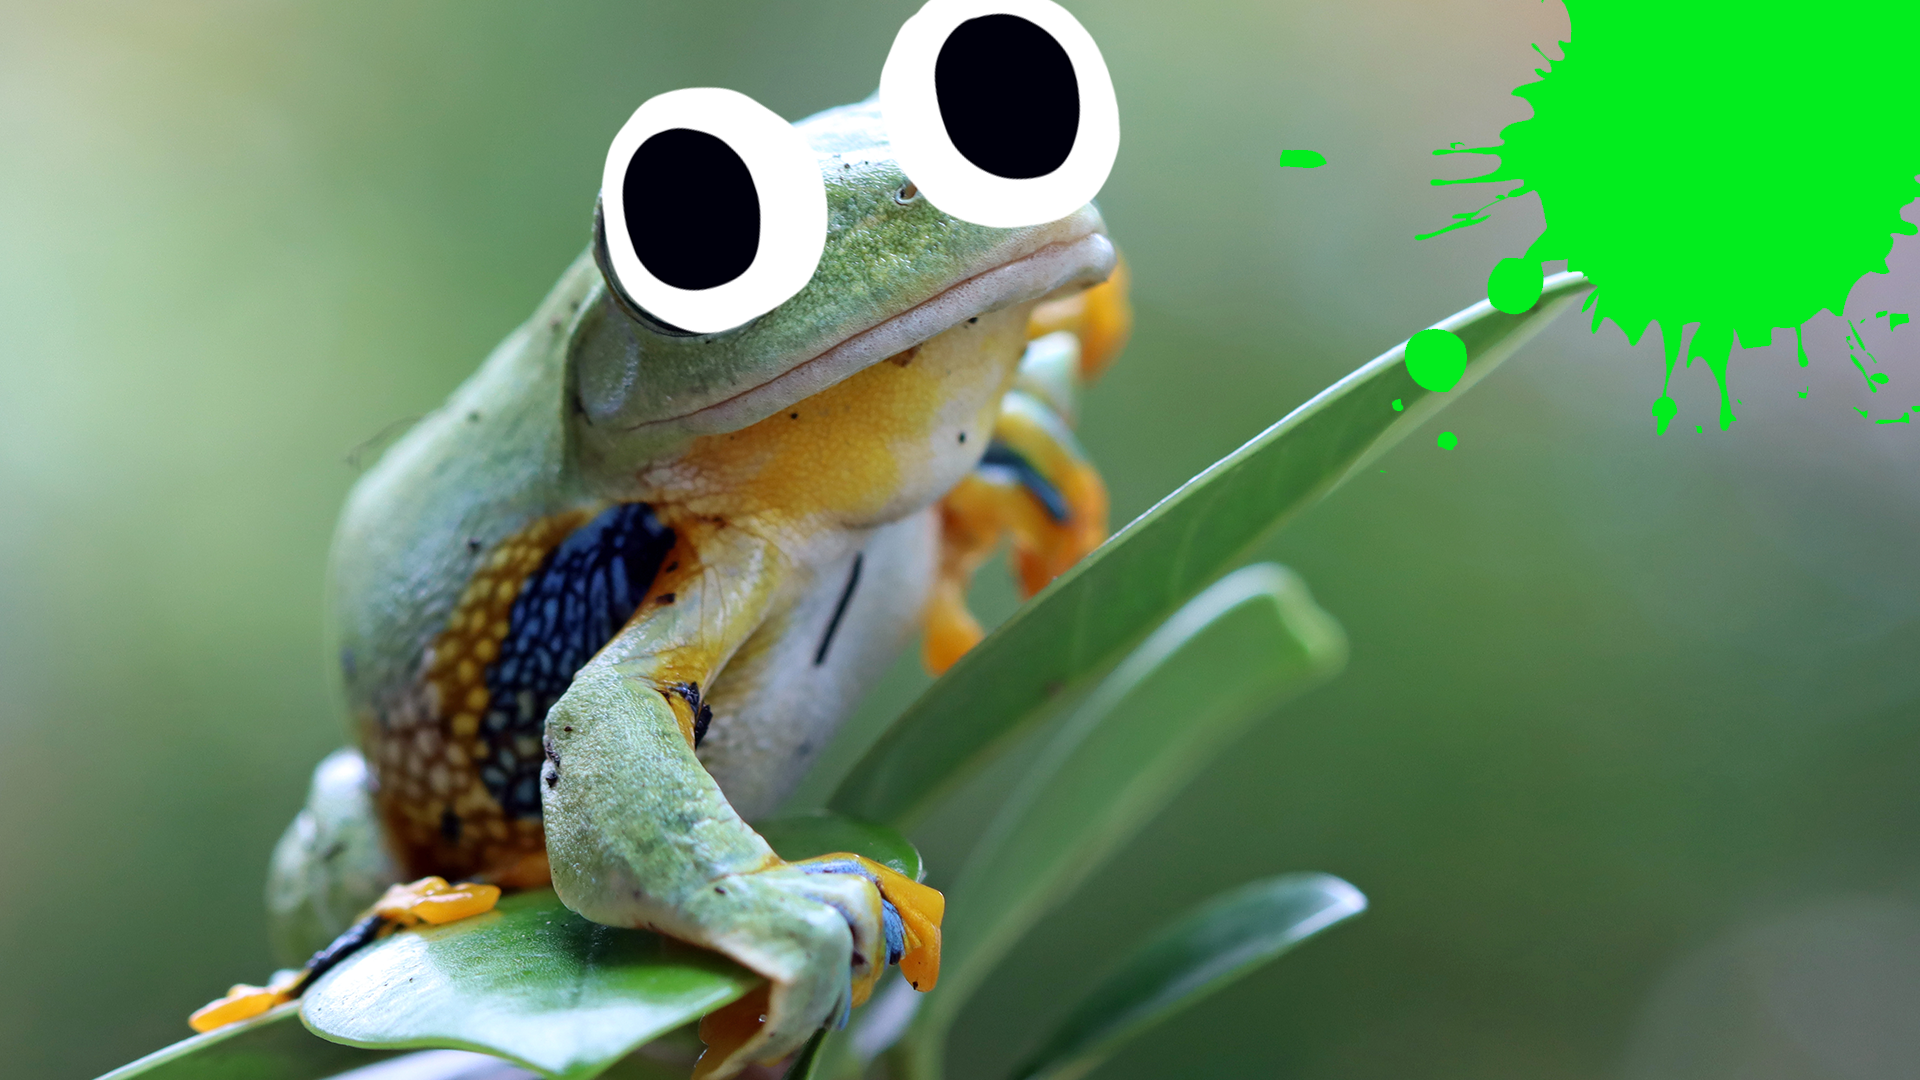 Cute frog on leaf